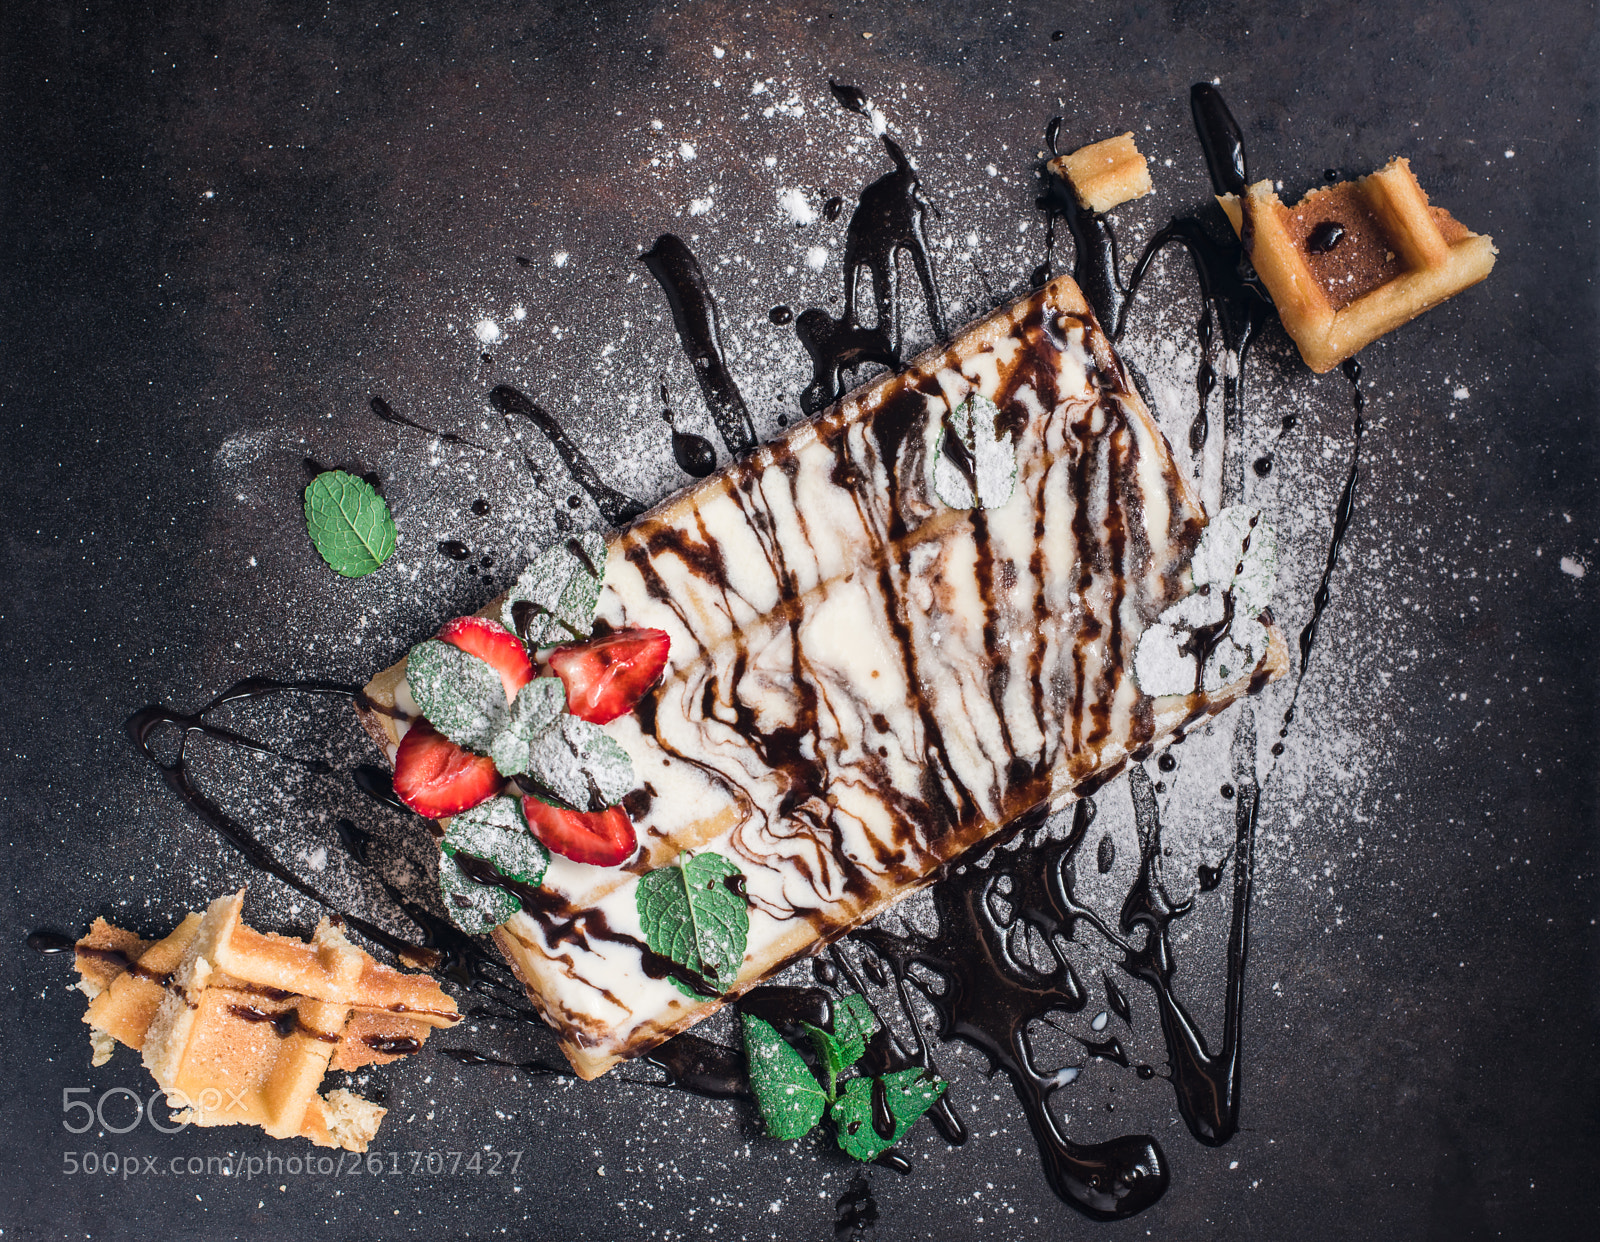 Nikon D810 sample photo. Belgium waffles with chocolate photography